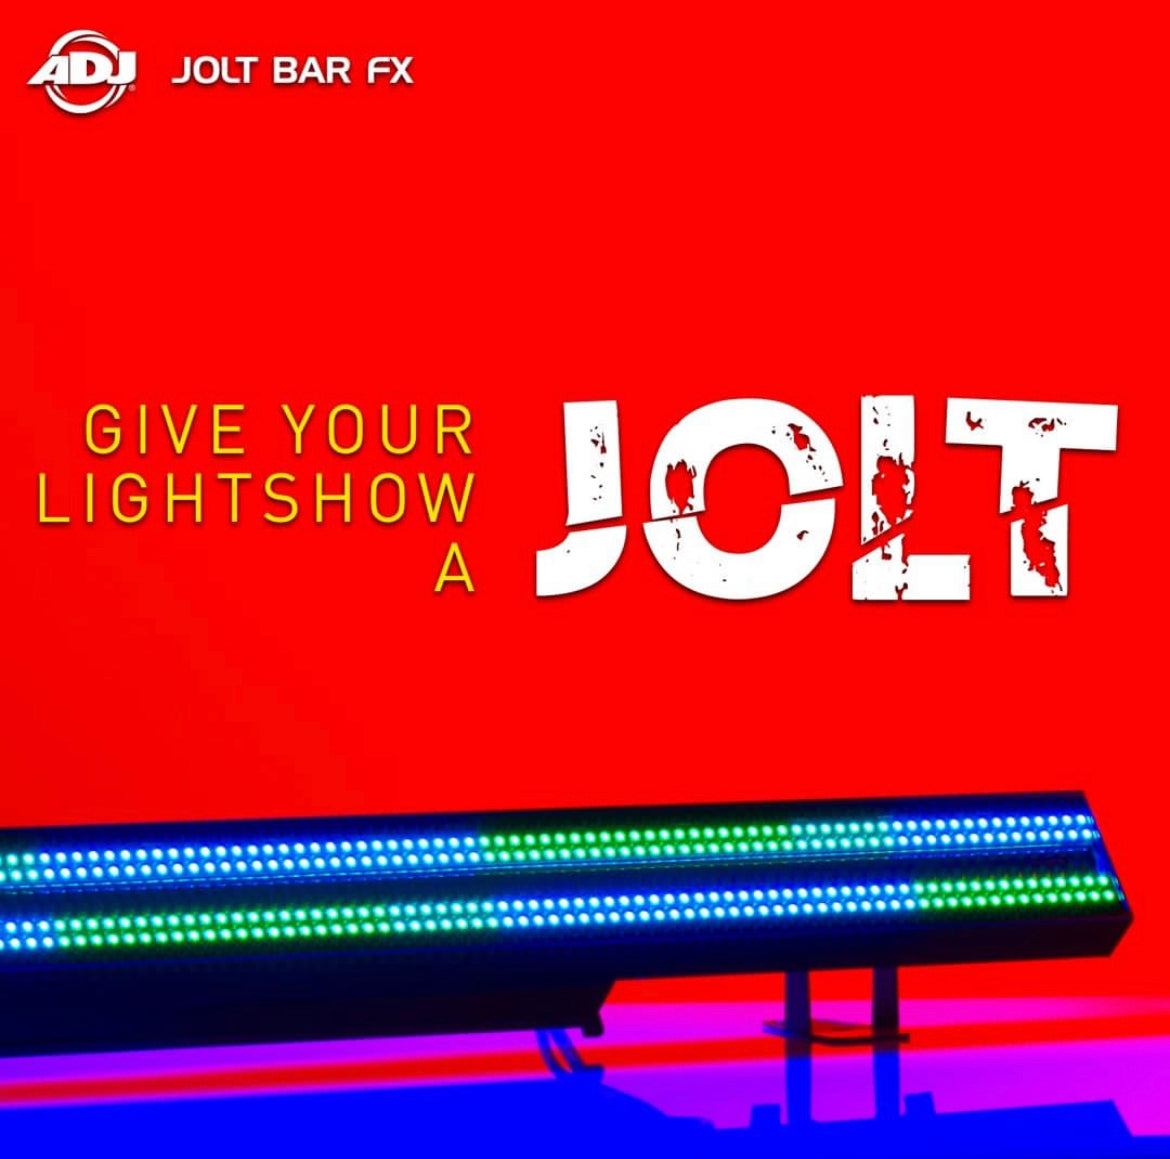 American DJ ADJ Jolt Bar FX Professional Linear LED Light